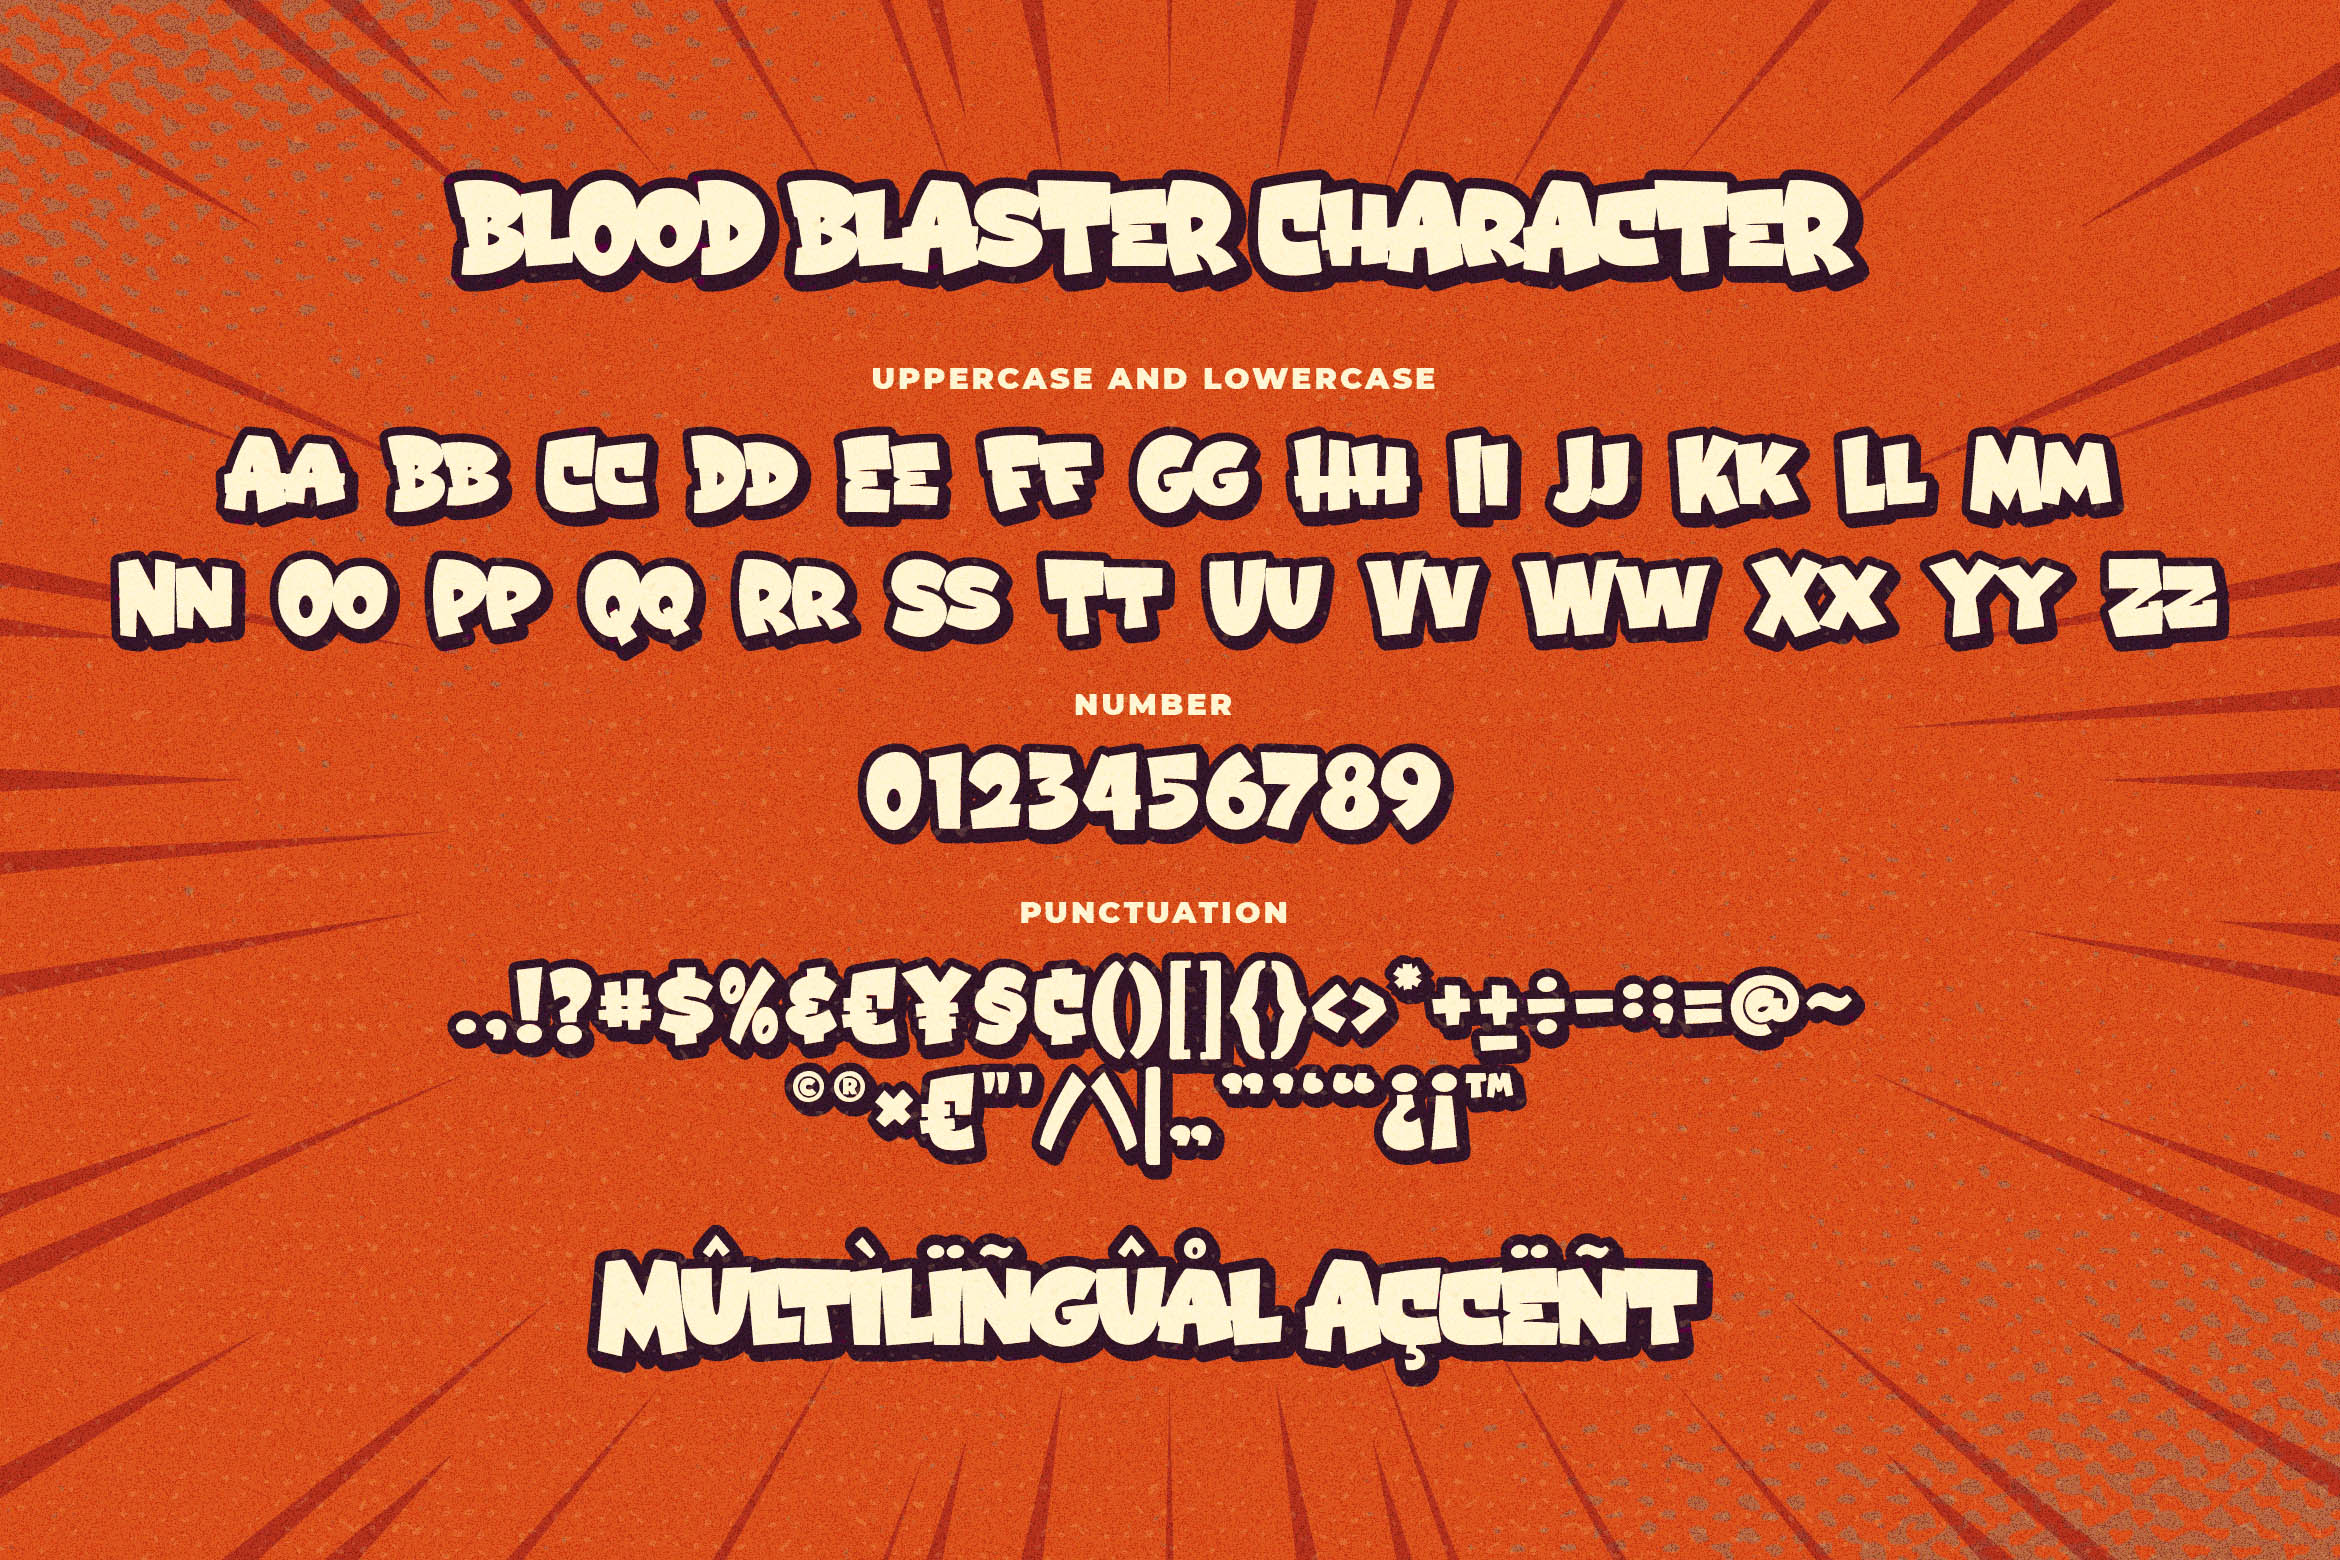 Blood Blaster